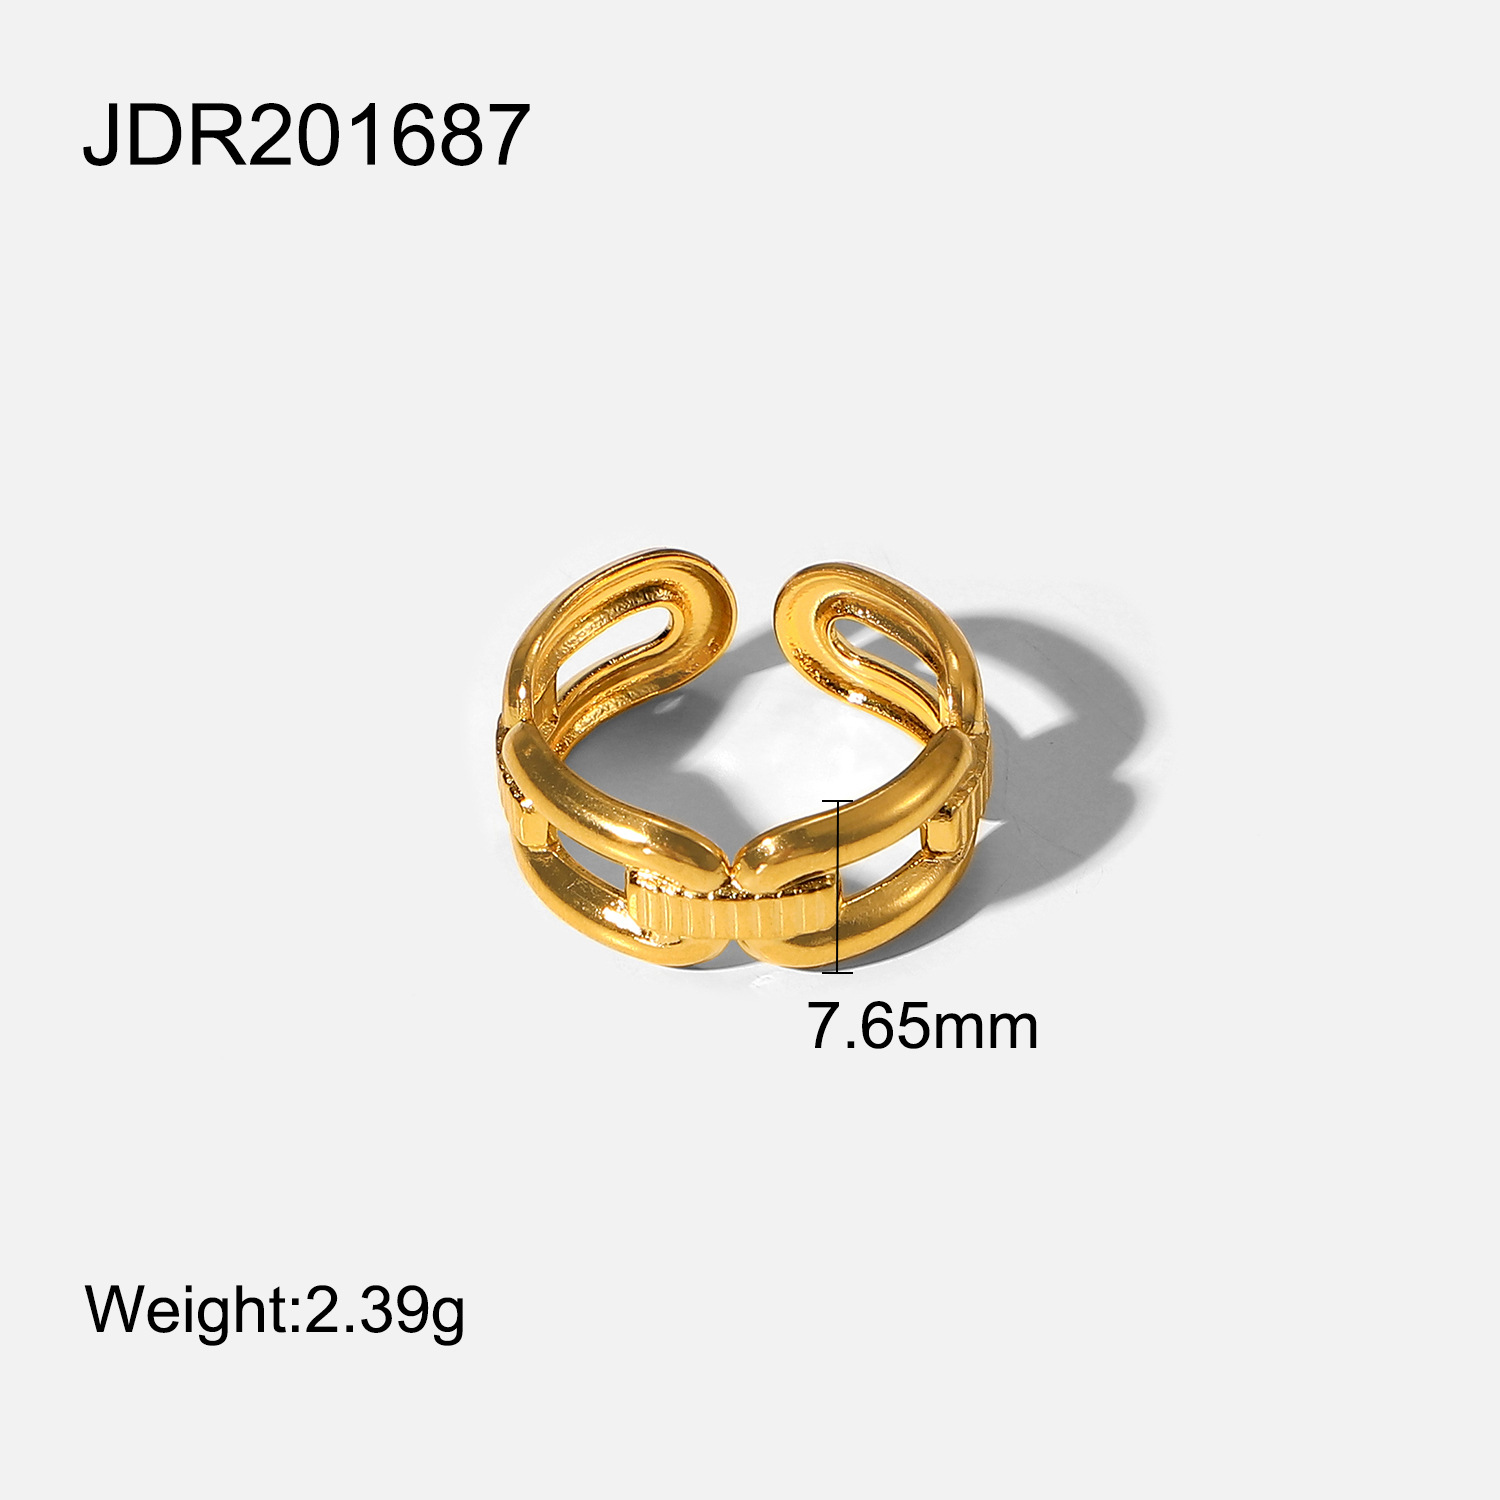 JDR201687